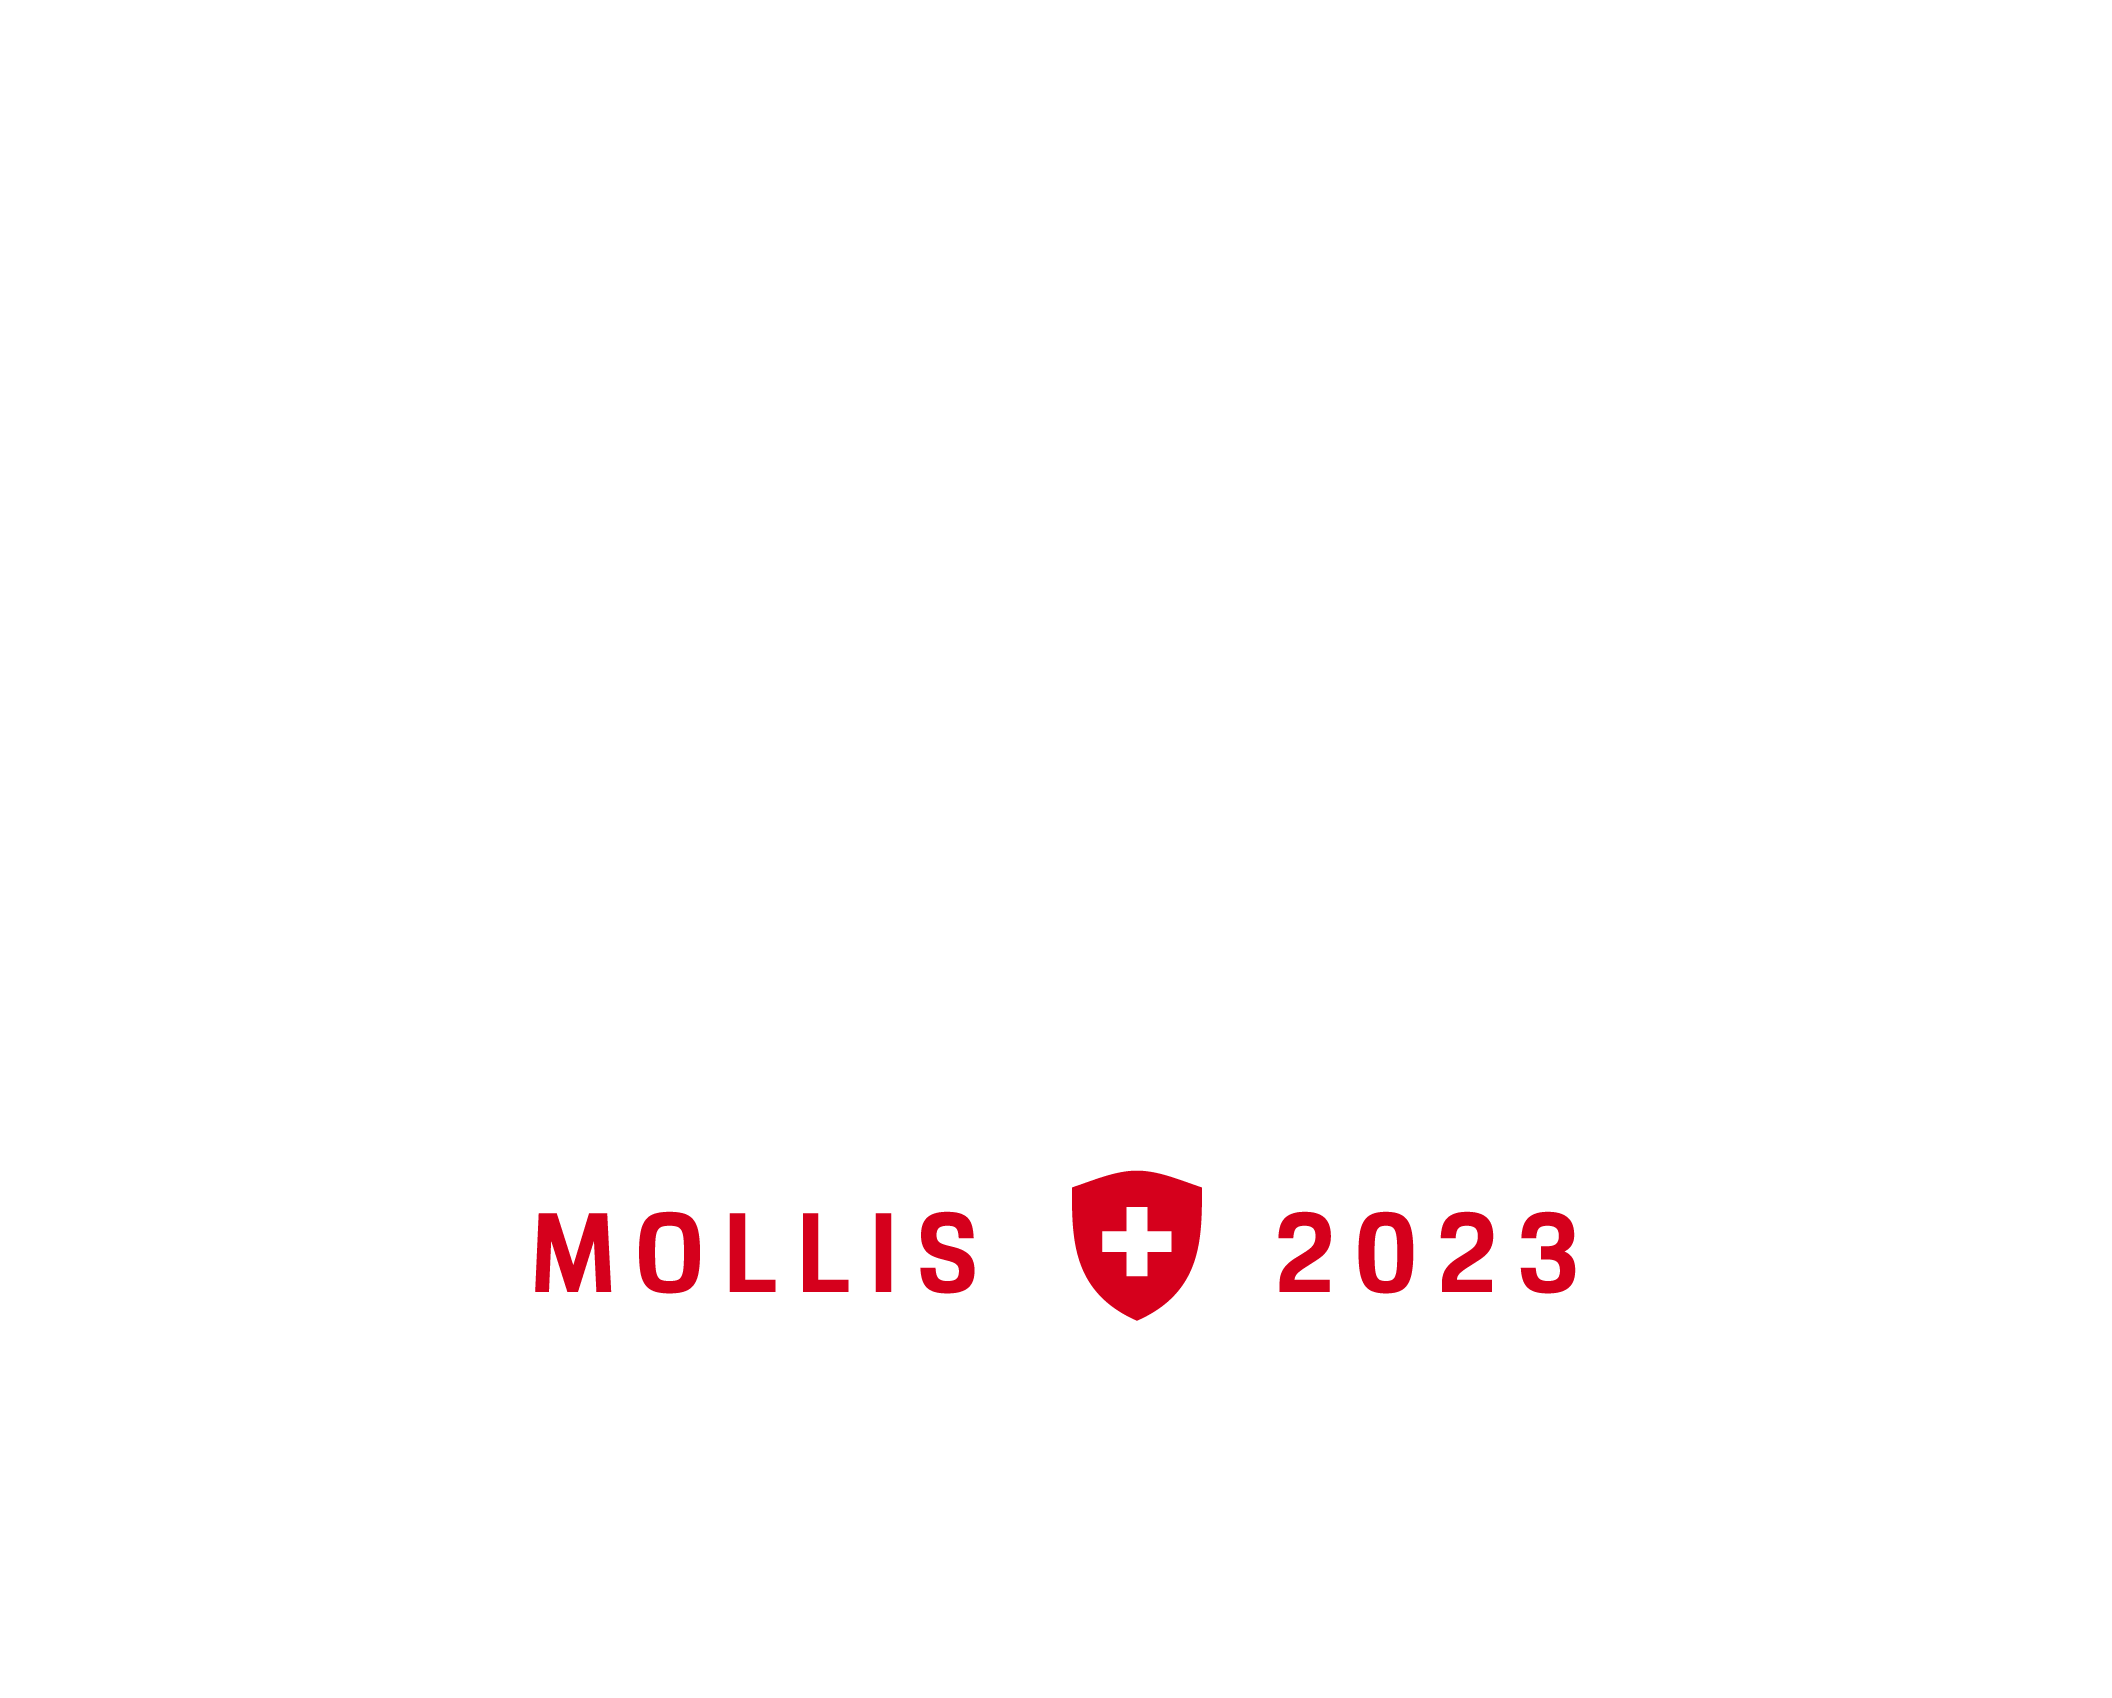 Porsche Festival Mollis 2023